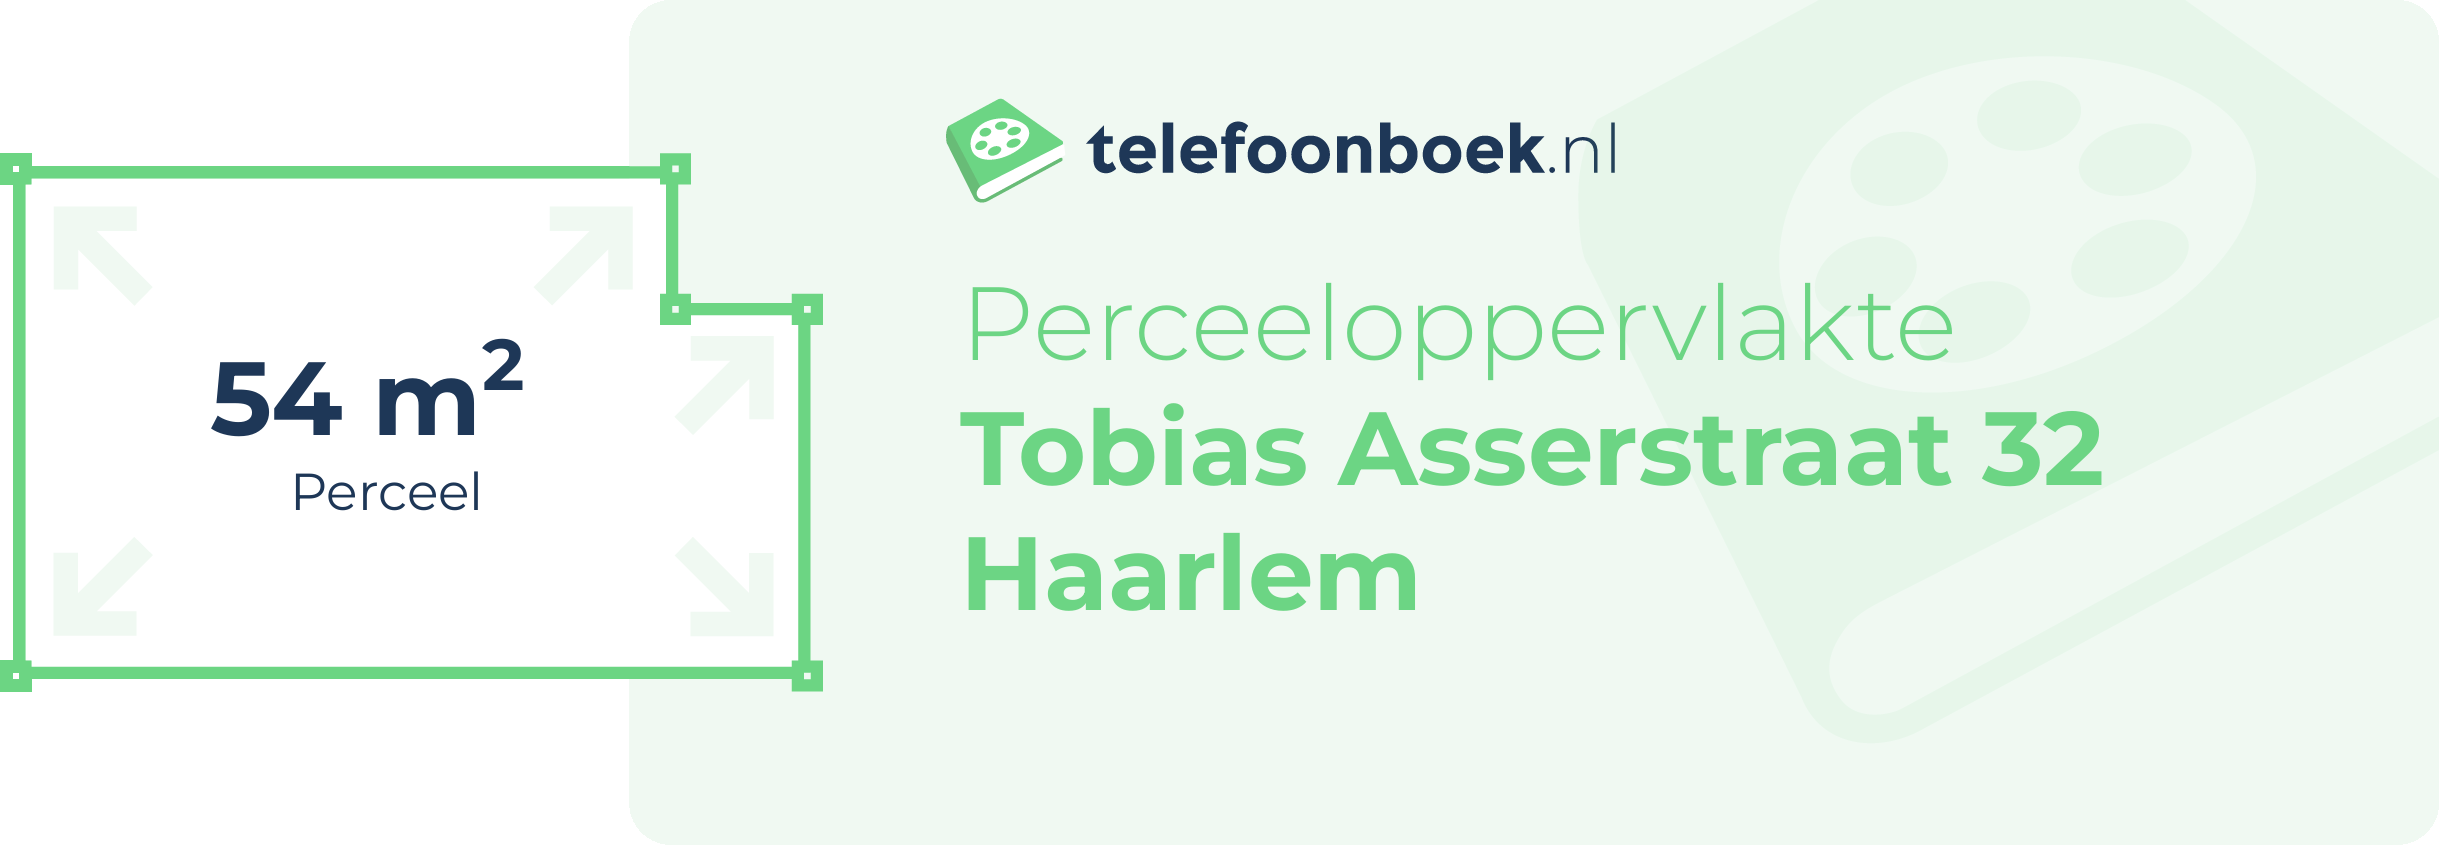 Perceeloppervlakte Tobias Asserstraat 32 Haarlem